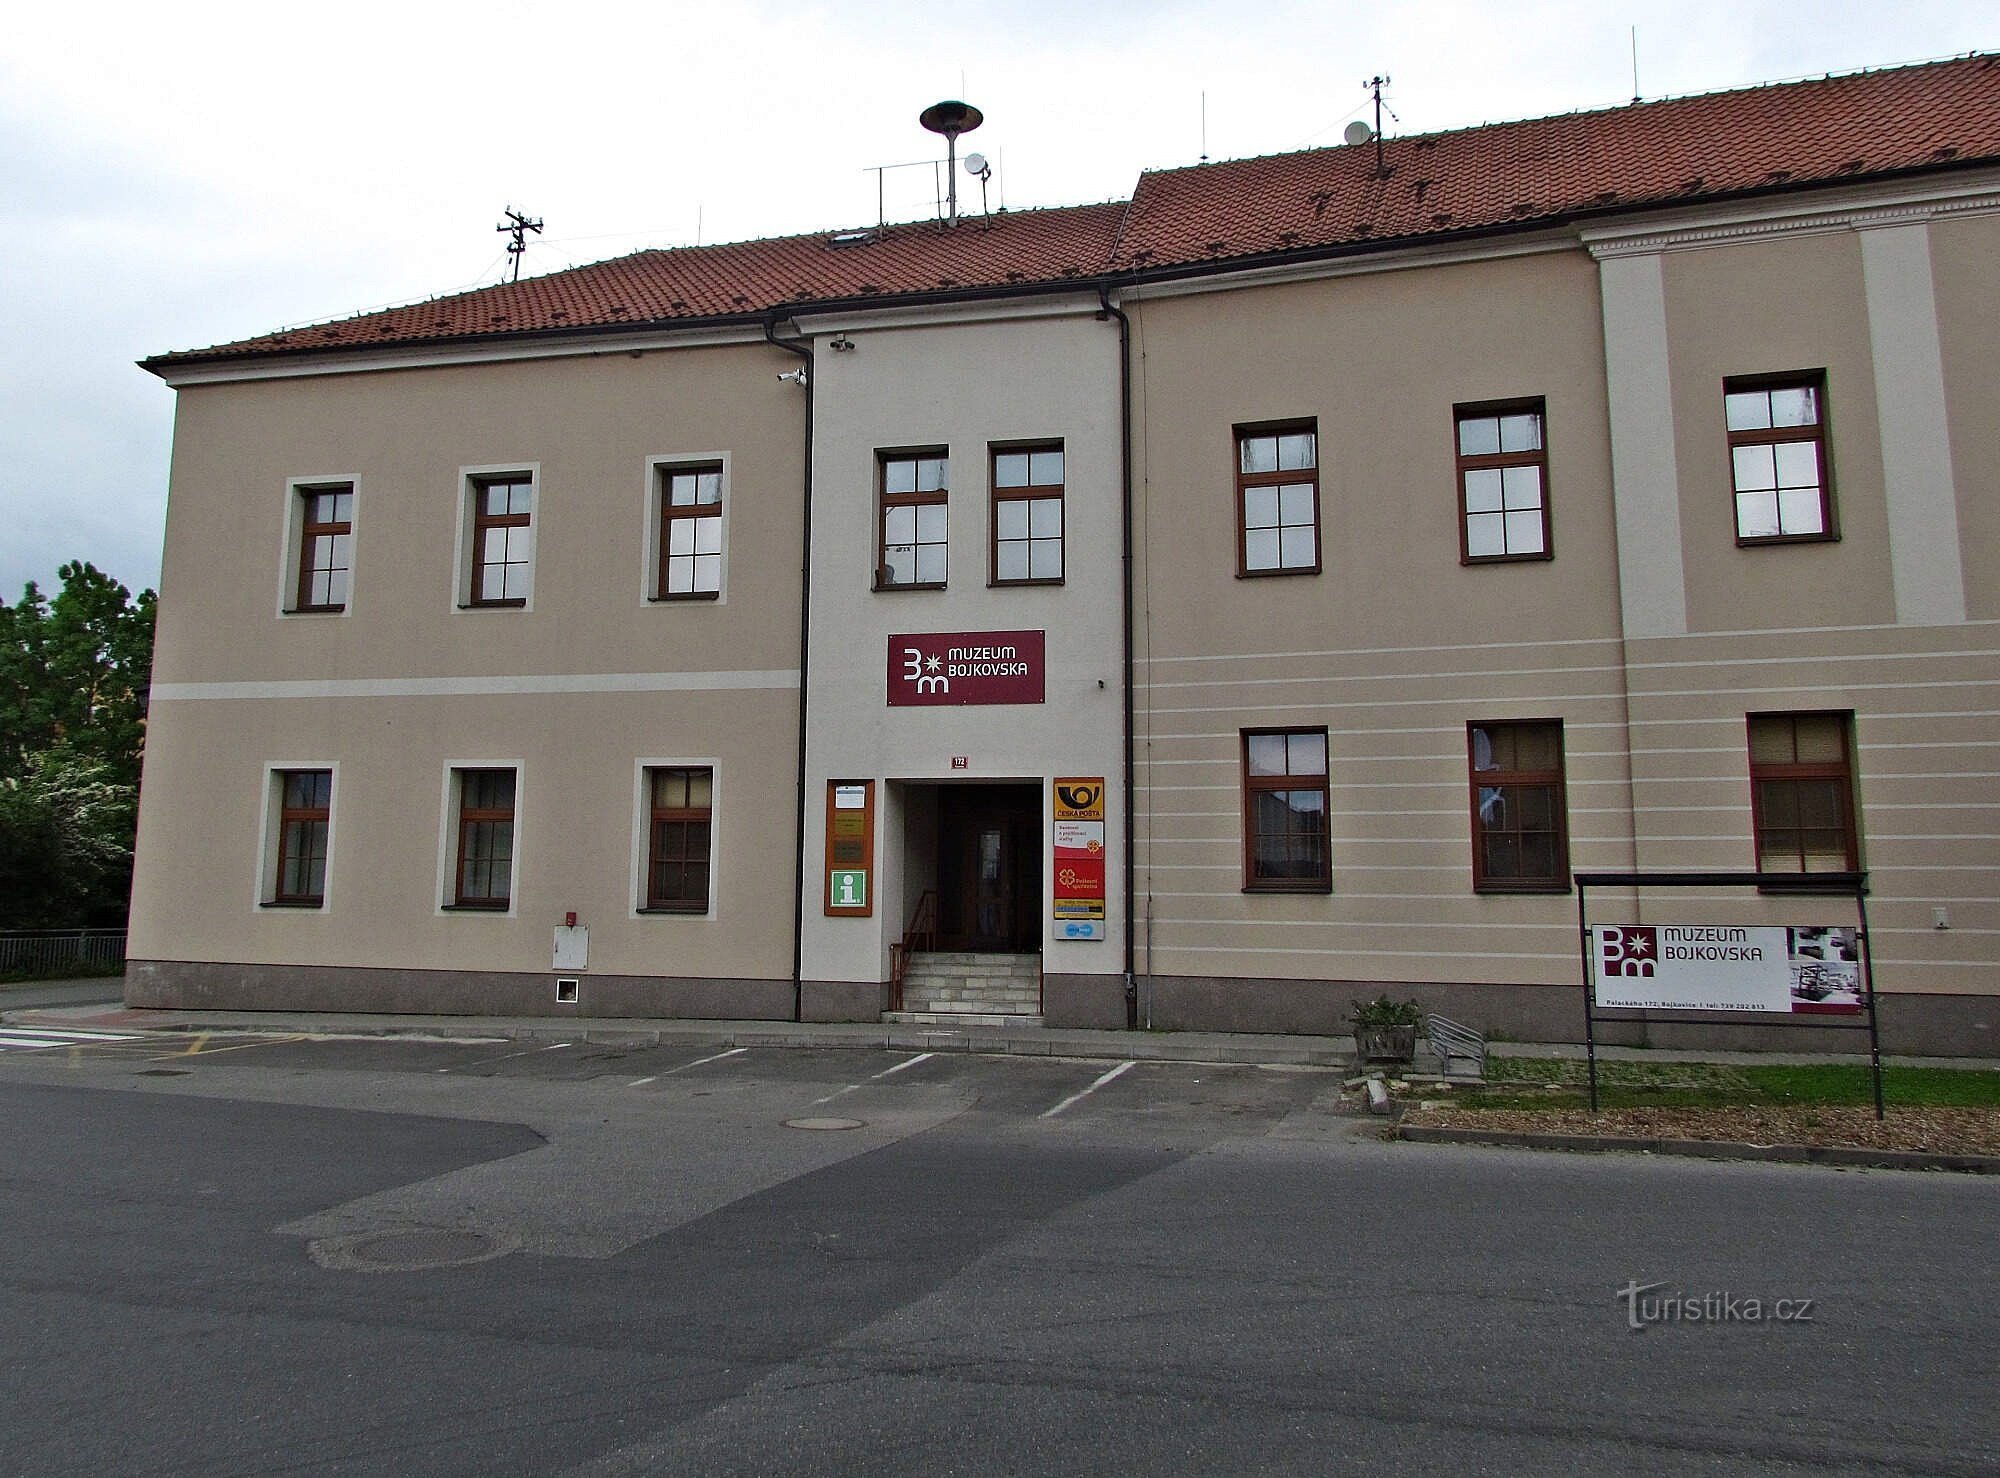 Într-un tur al Muzeului Bojkovska